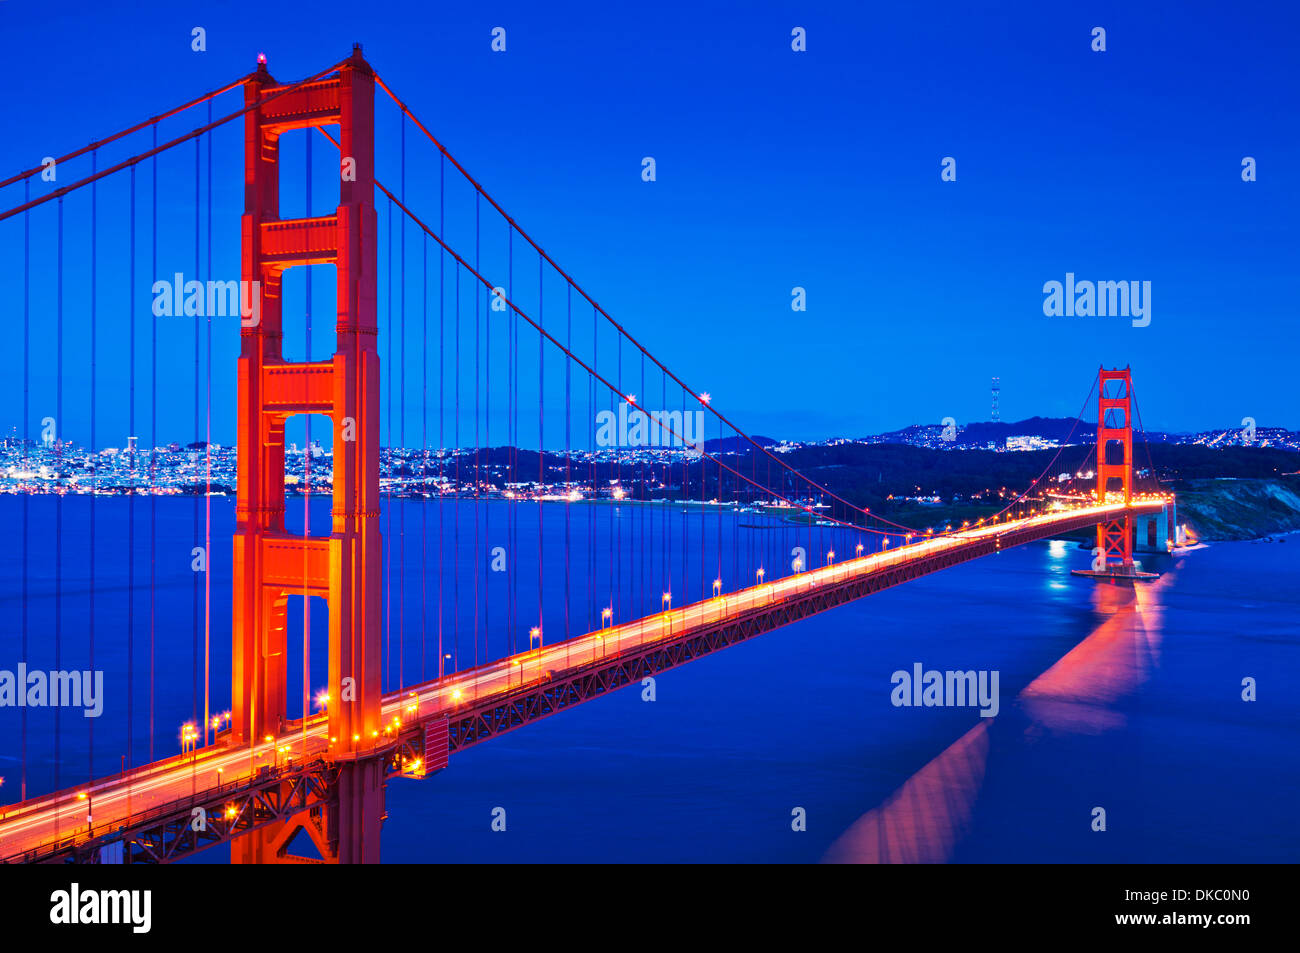 Puente Golden Gate de San Francisco en la noche con semáforo senderos a través del puente San Francisco, California, EE.UU. Foto de stock